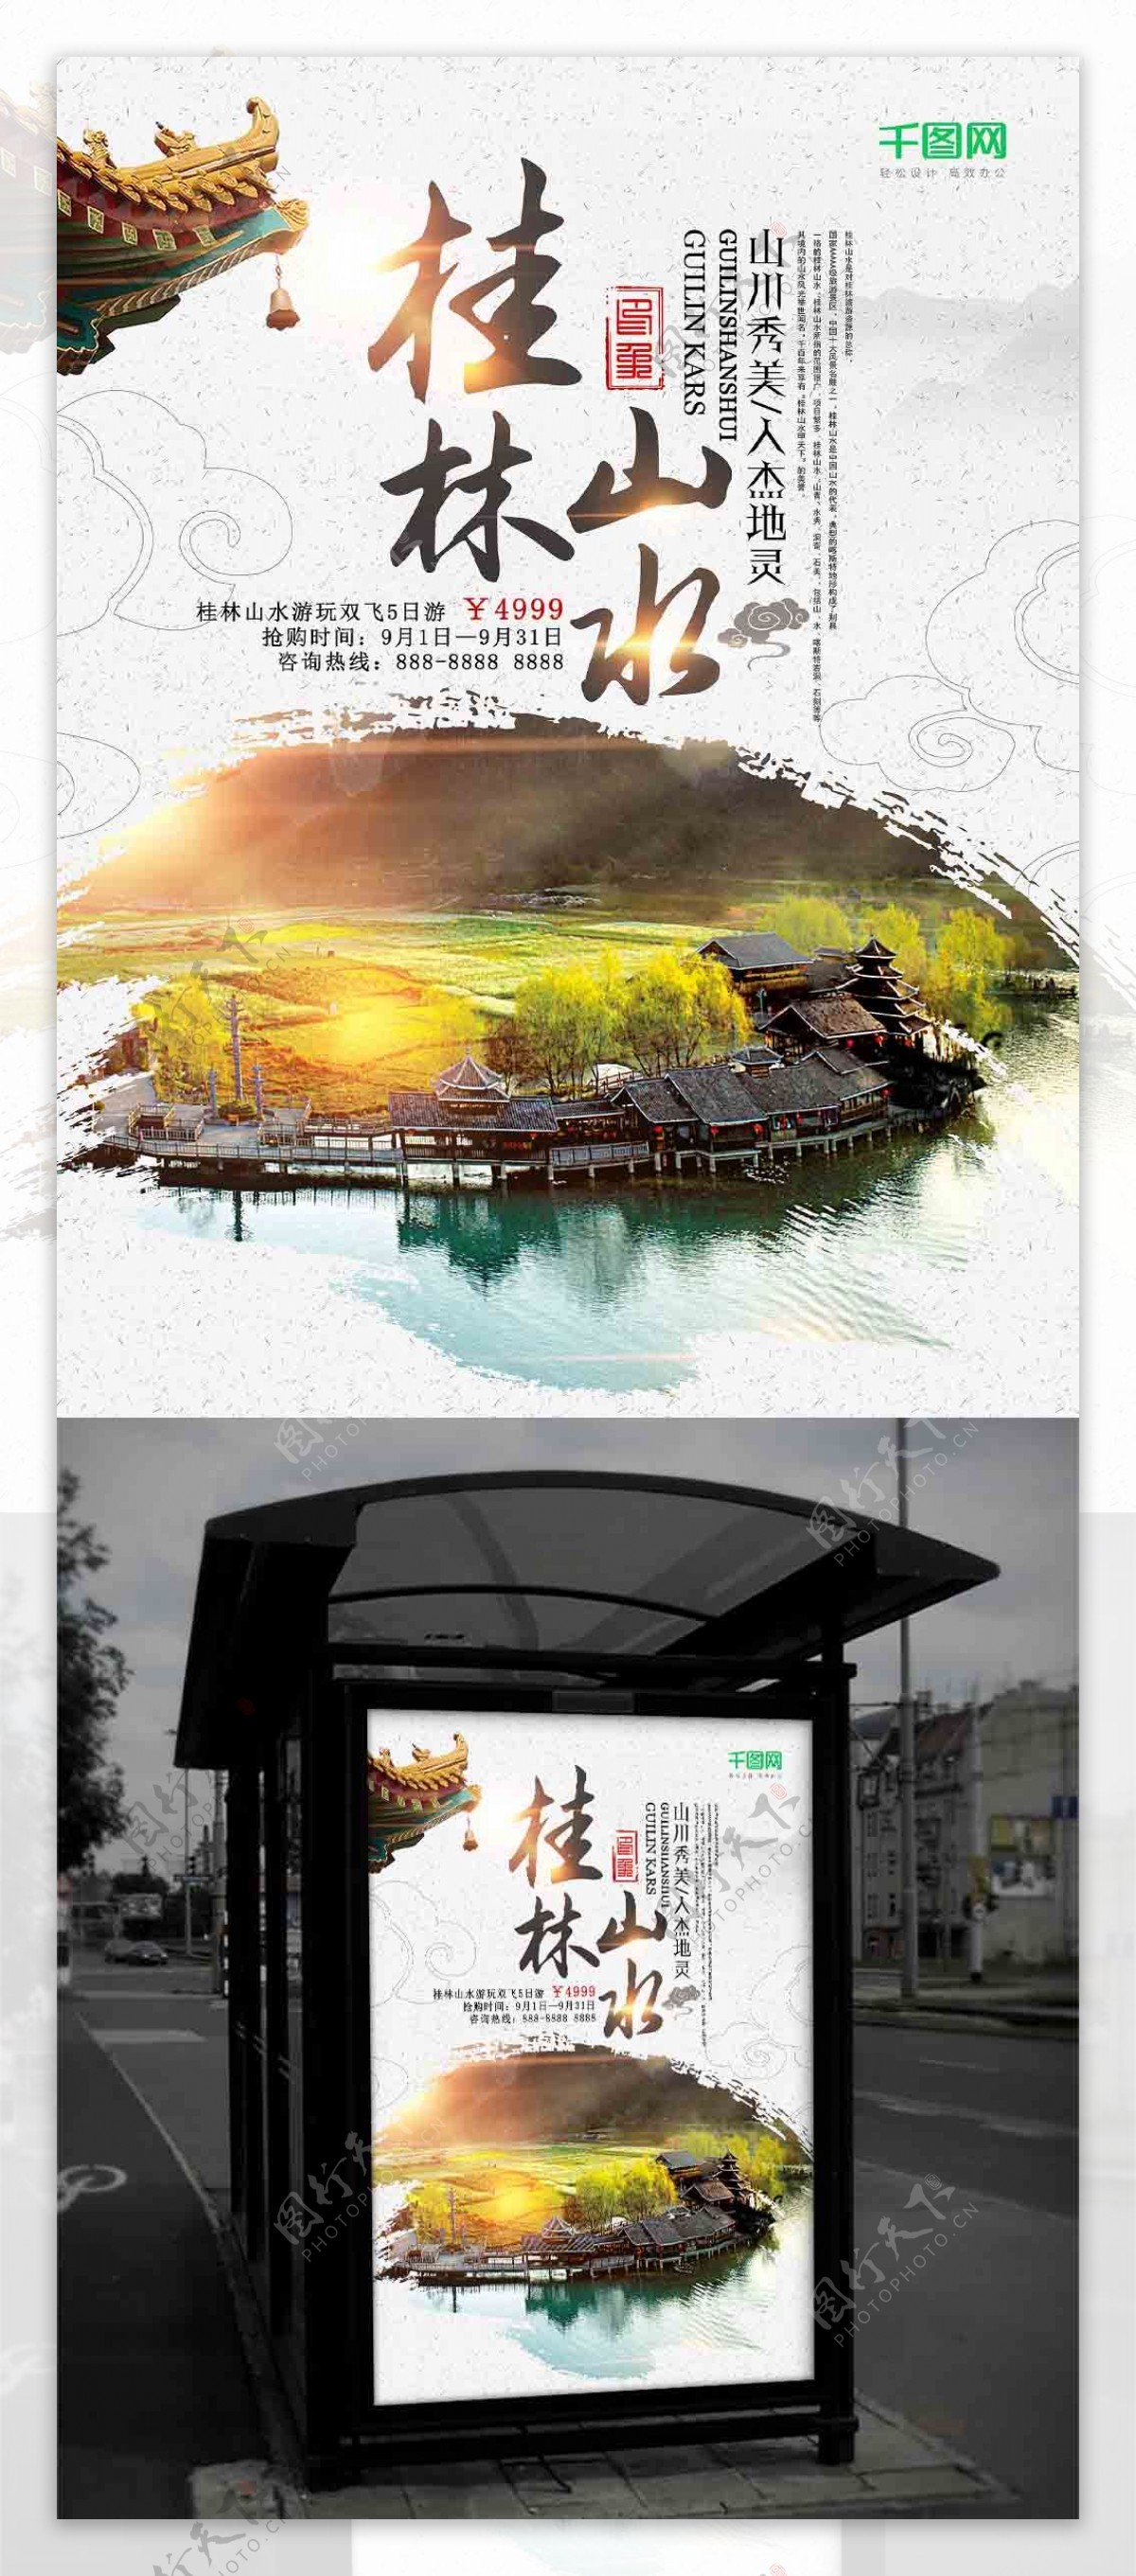 中国风最美桂林山水旅游特价双飞5日游海报